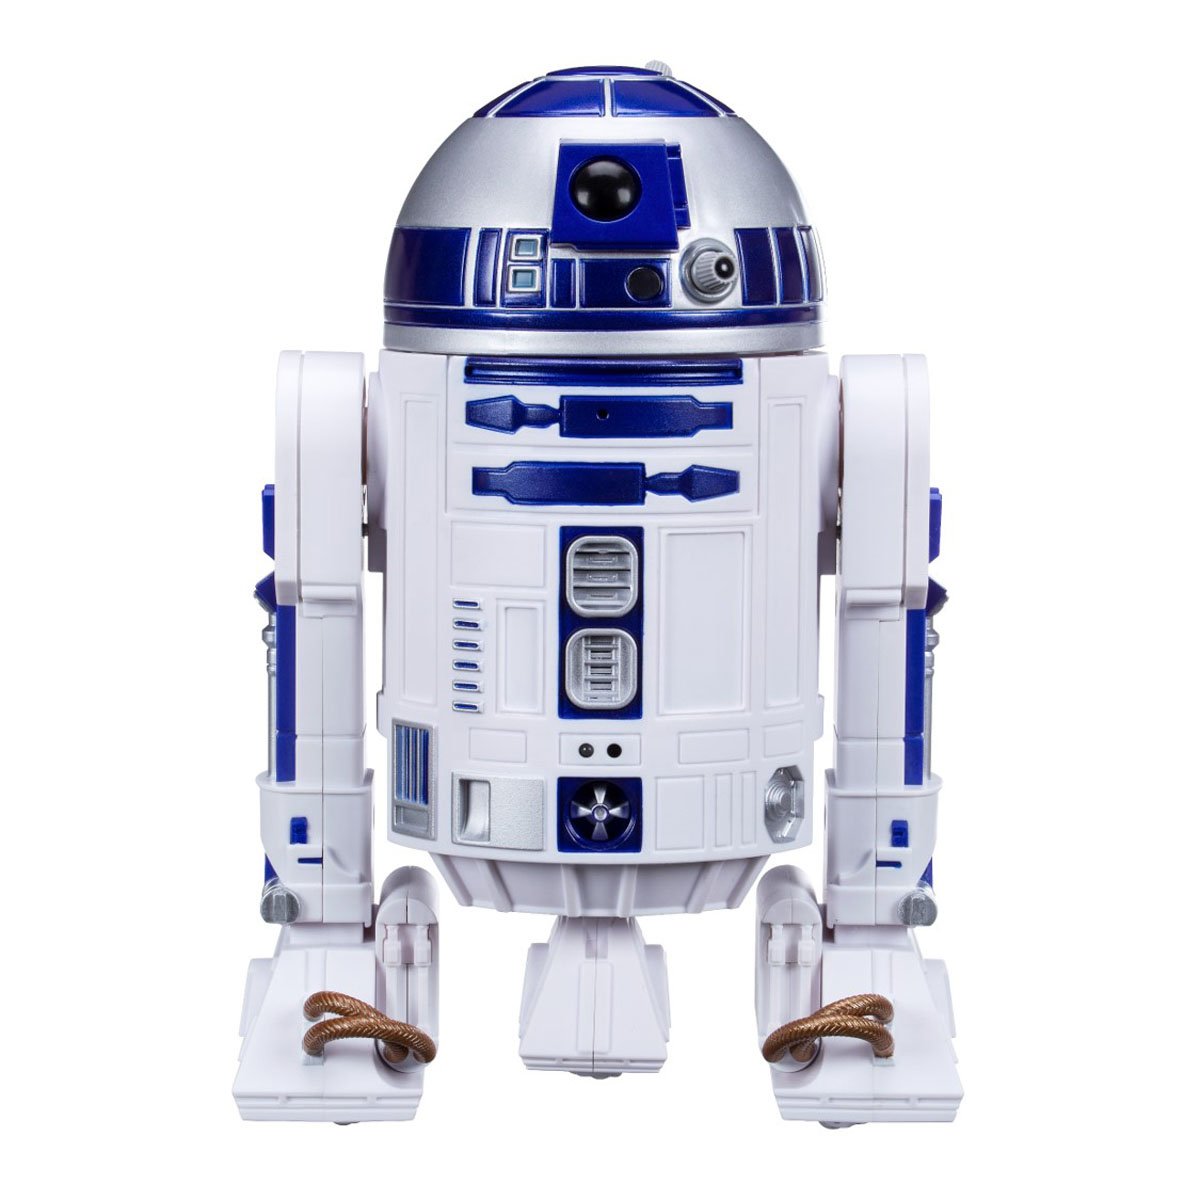 Star Wars Smart Delta R2 D2 Hasbro